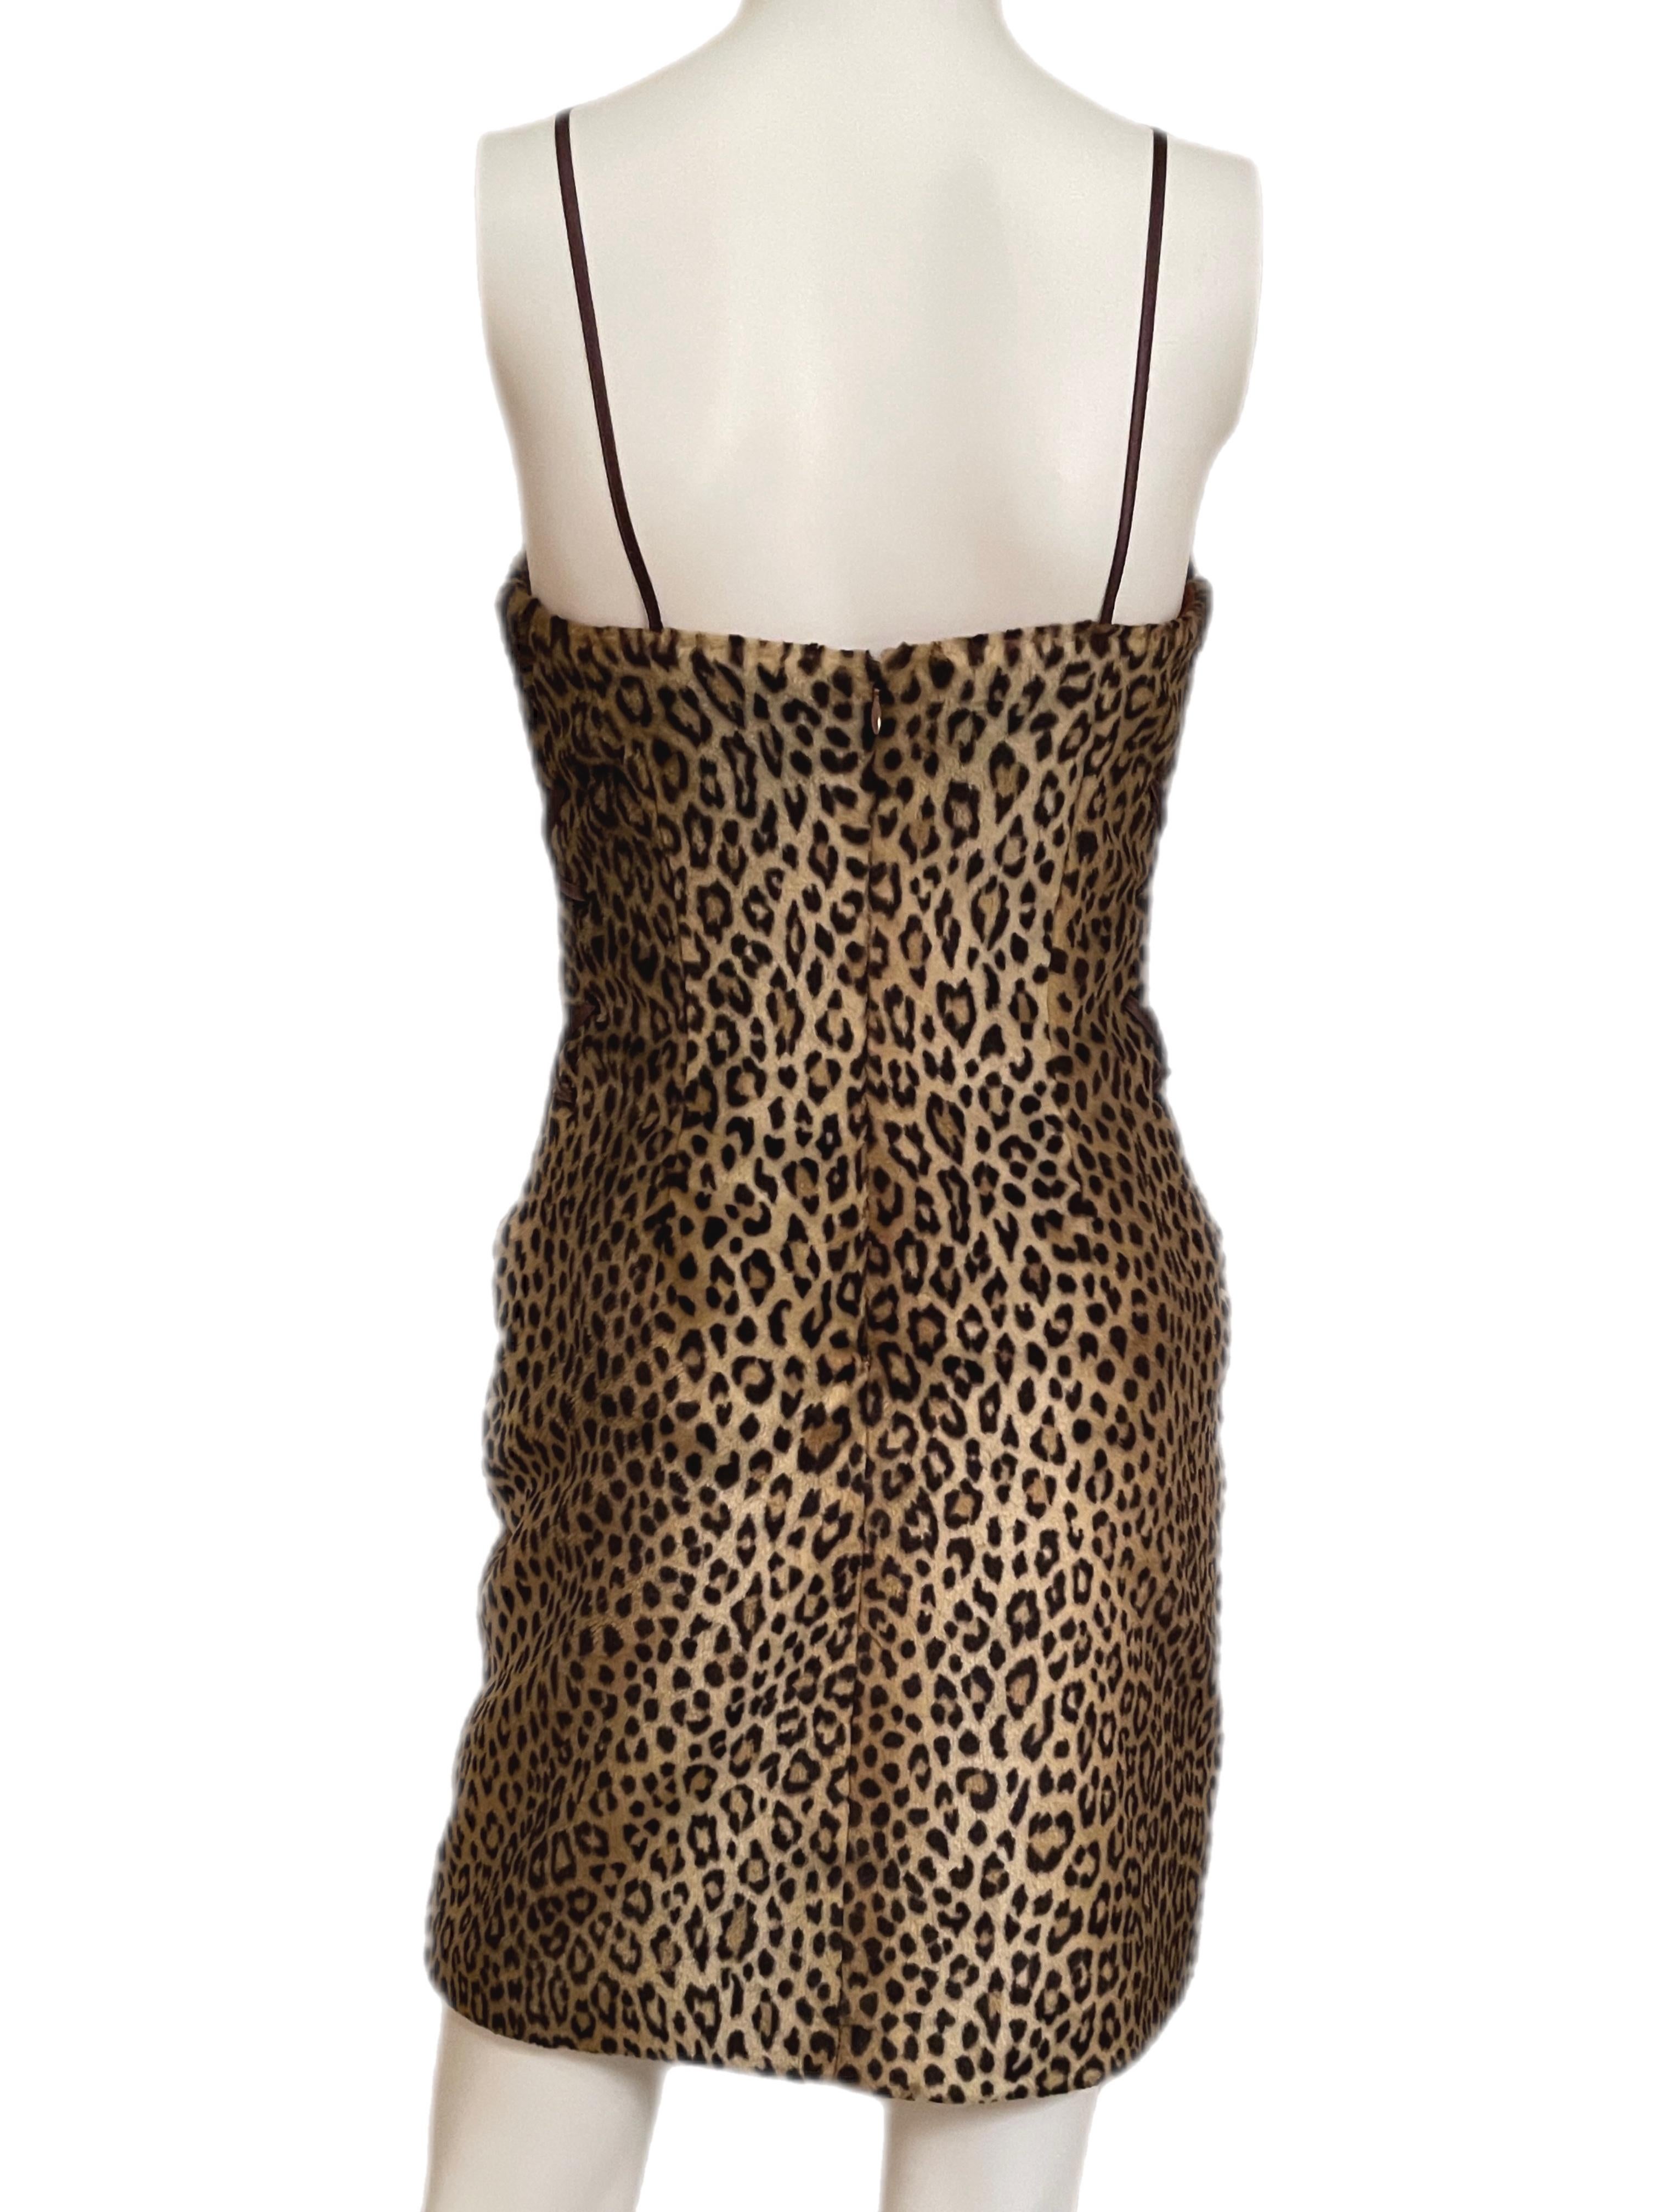 YVES SAINT LAURENT leopard corset lace up mini dress vintage In Excellent Condition In Leonardo, NJ